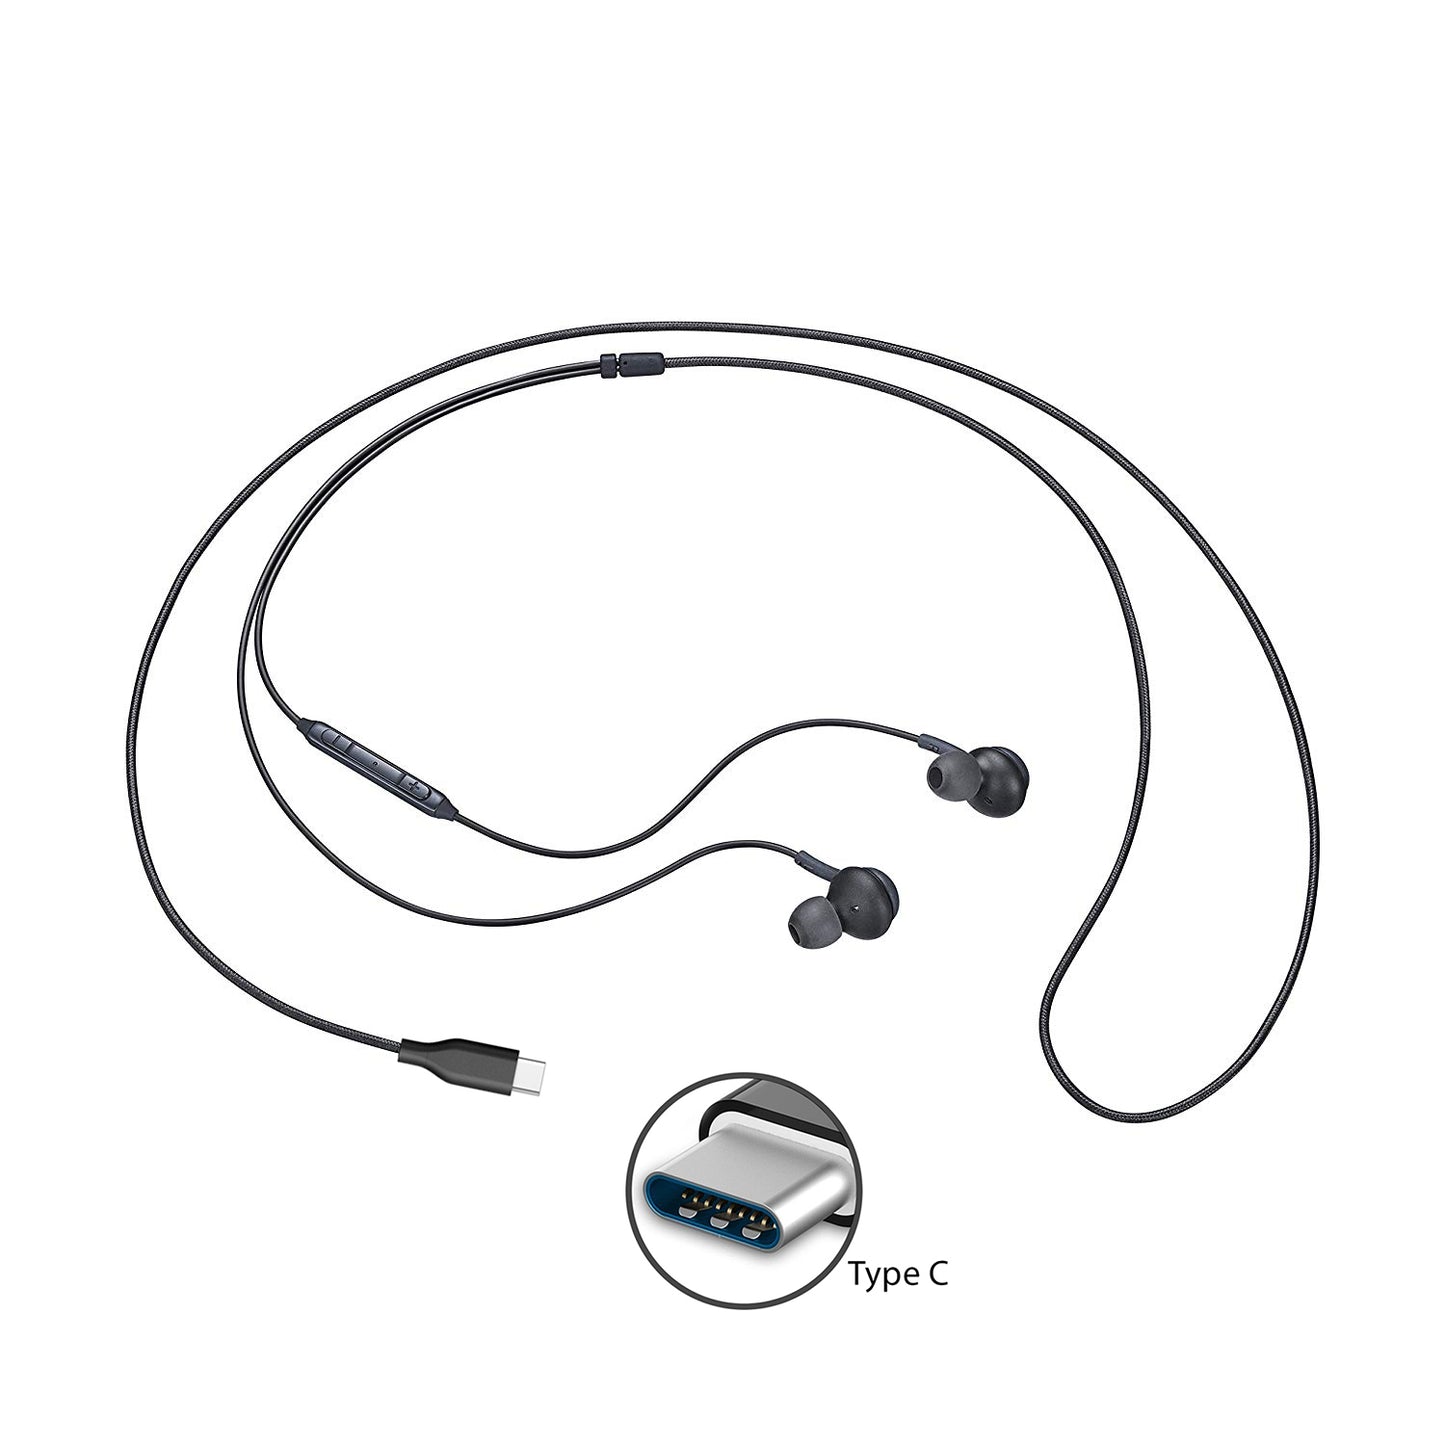 TYPE-C Earphones Wired Earbuds Headphones - Black 2084-2